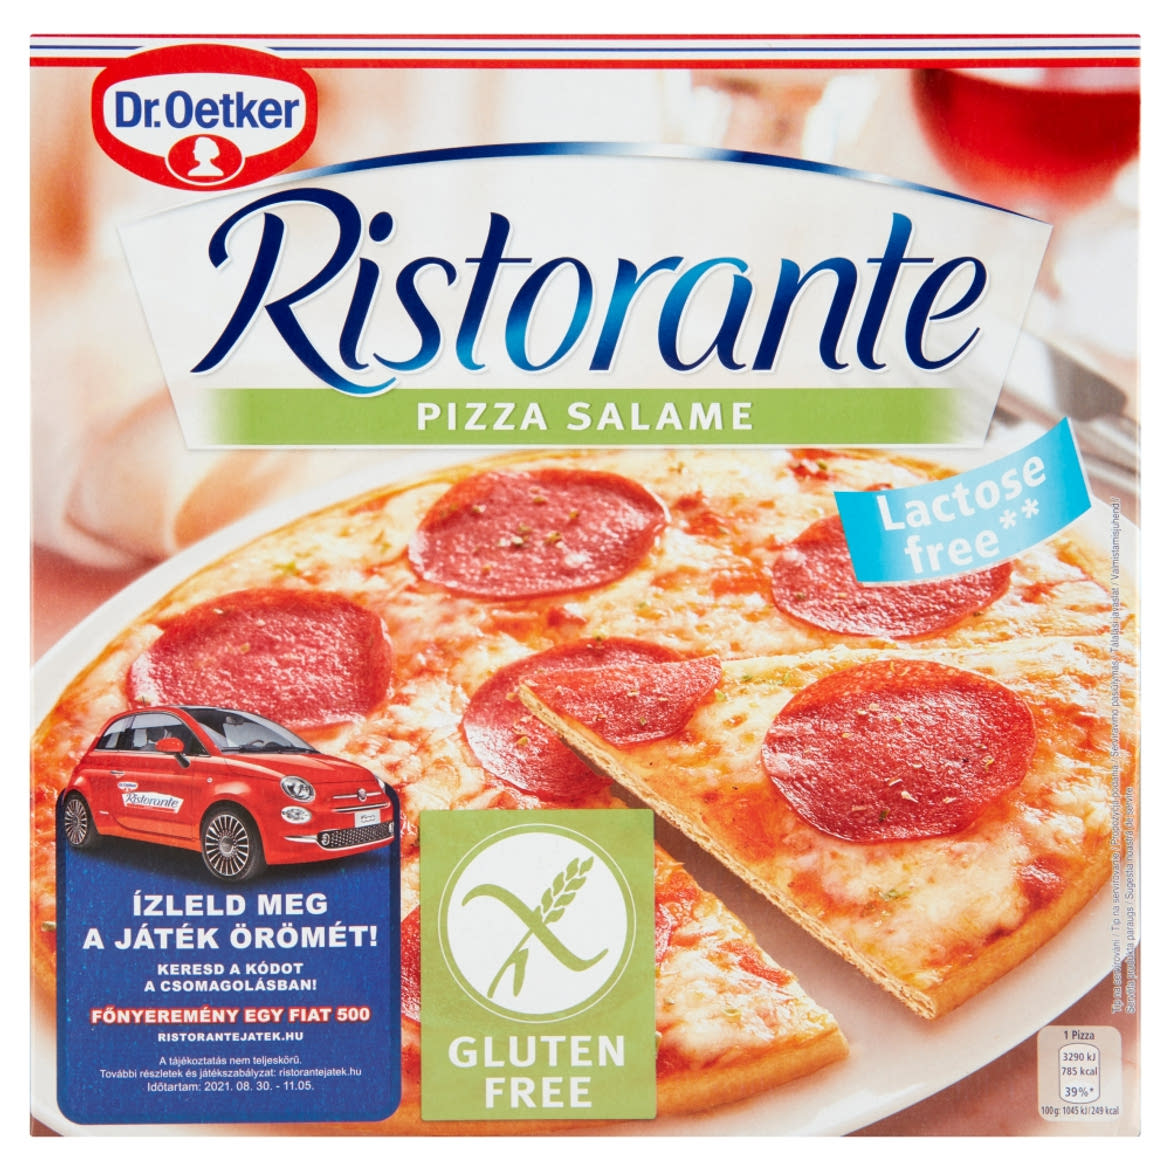 Dr. Oetker Ristorante Pizza Salame gyorsfagyasztott gluténmentes pizza sajttal és szalámival